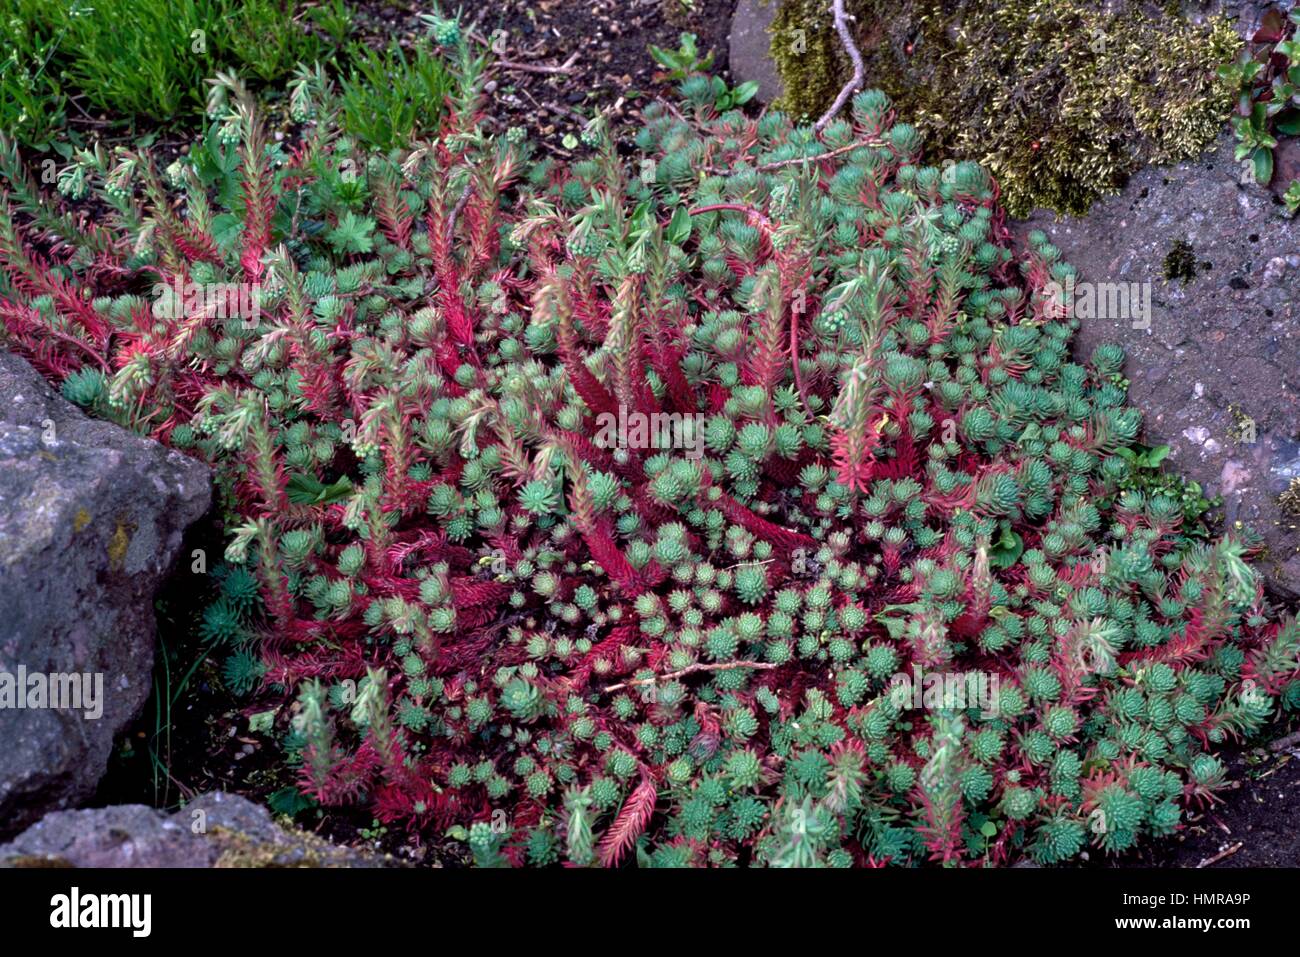 Rock stonecrop (Sedum forsterianum), Crassulaceae. Stock Photo